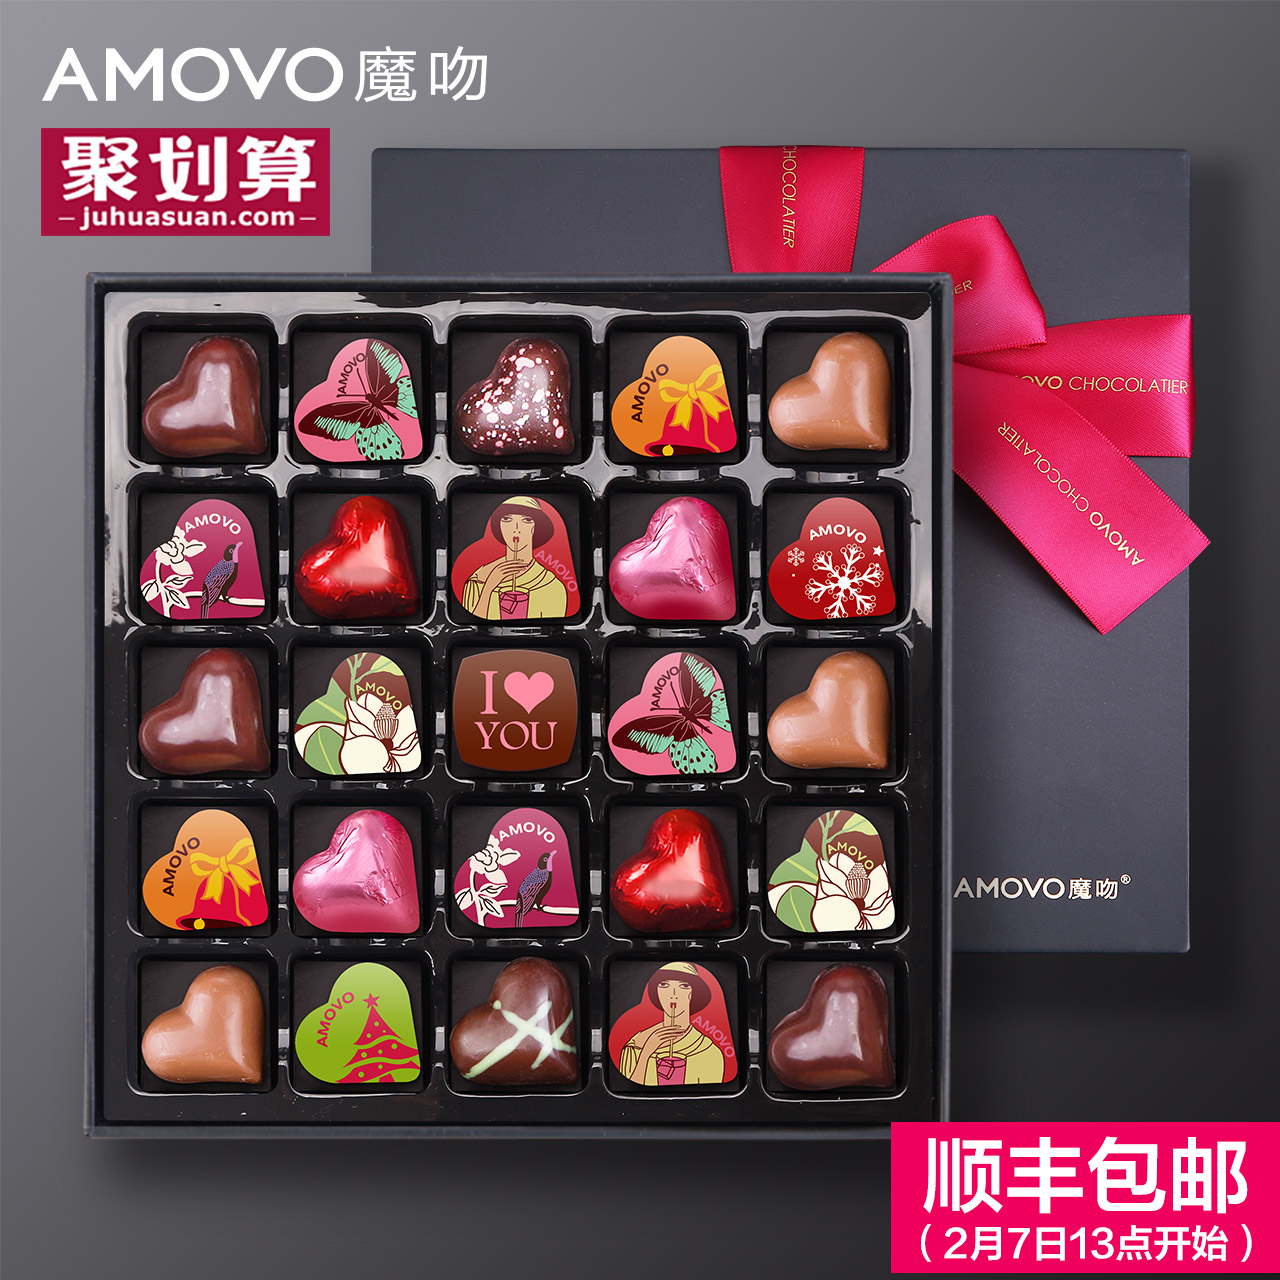 amovo魔吻情人节巧克力礼盒装 高端创意diy手工生日礼物送女友产品展示图1